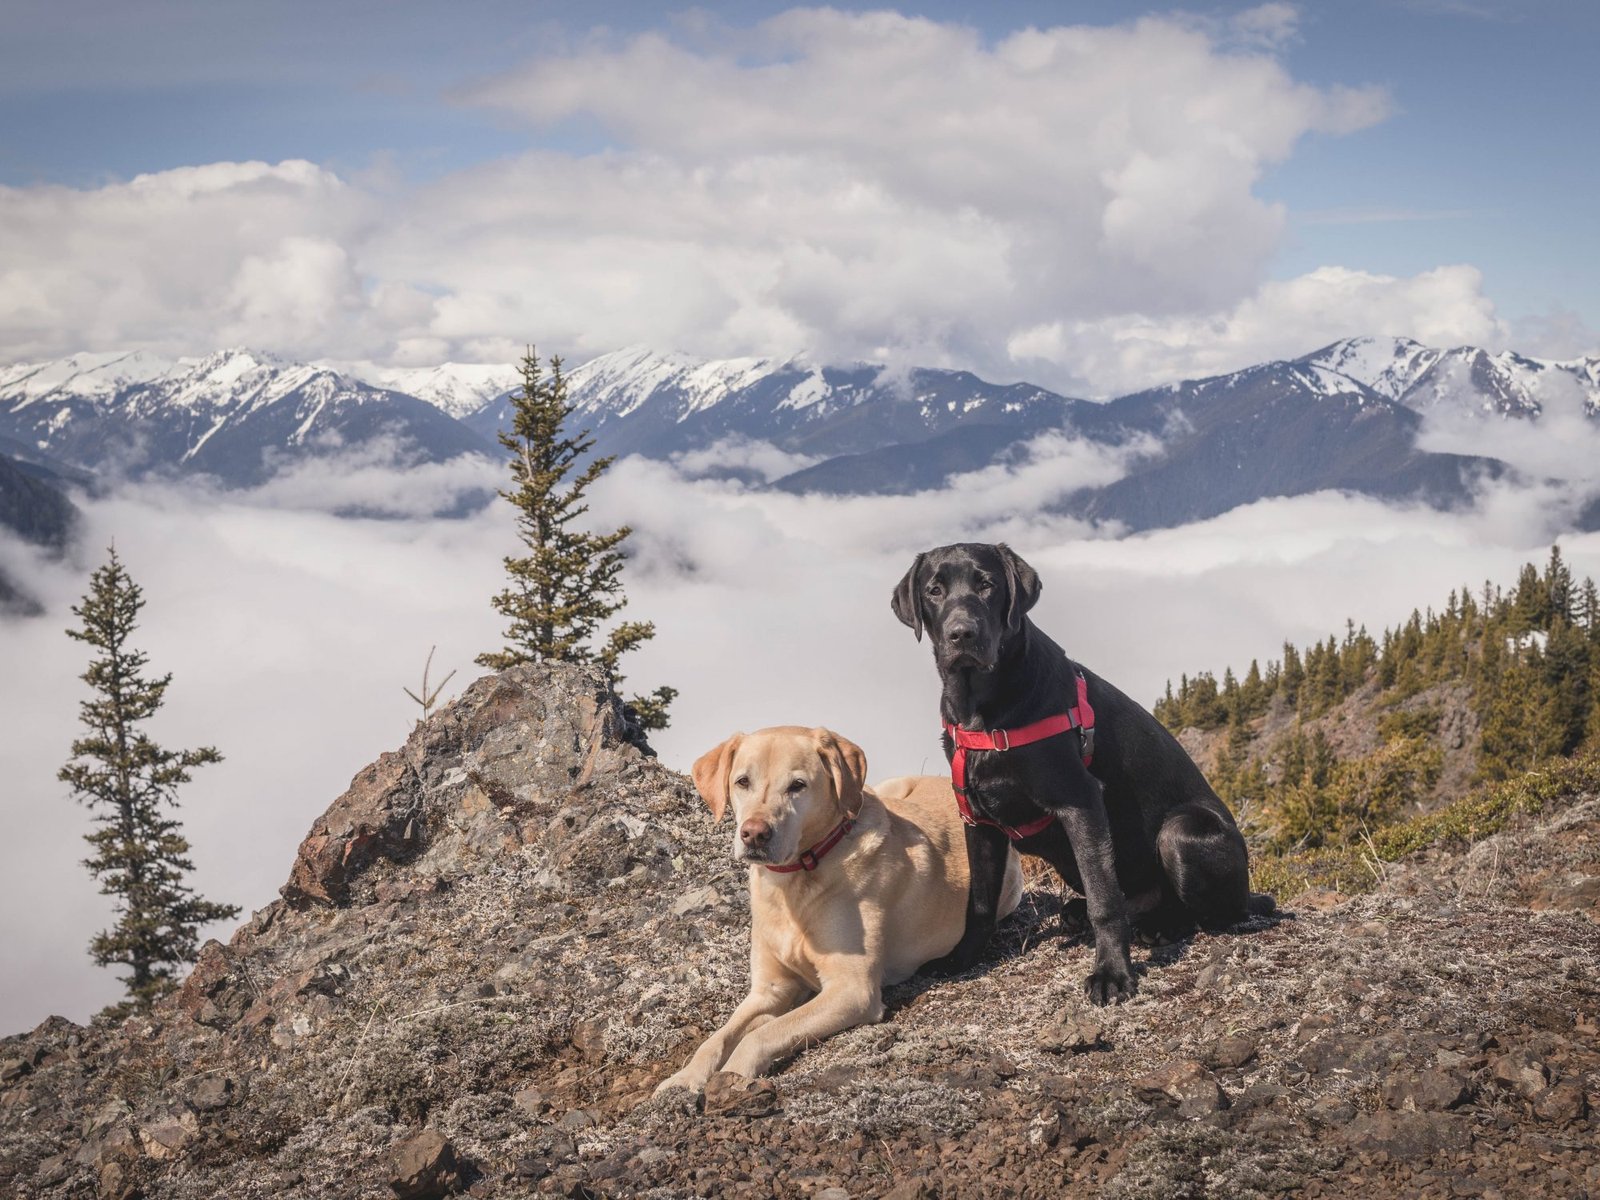 Summit dogs on Maynard Peak